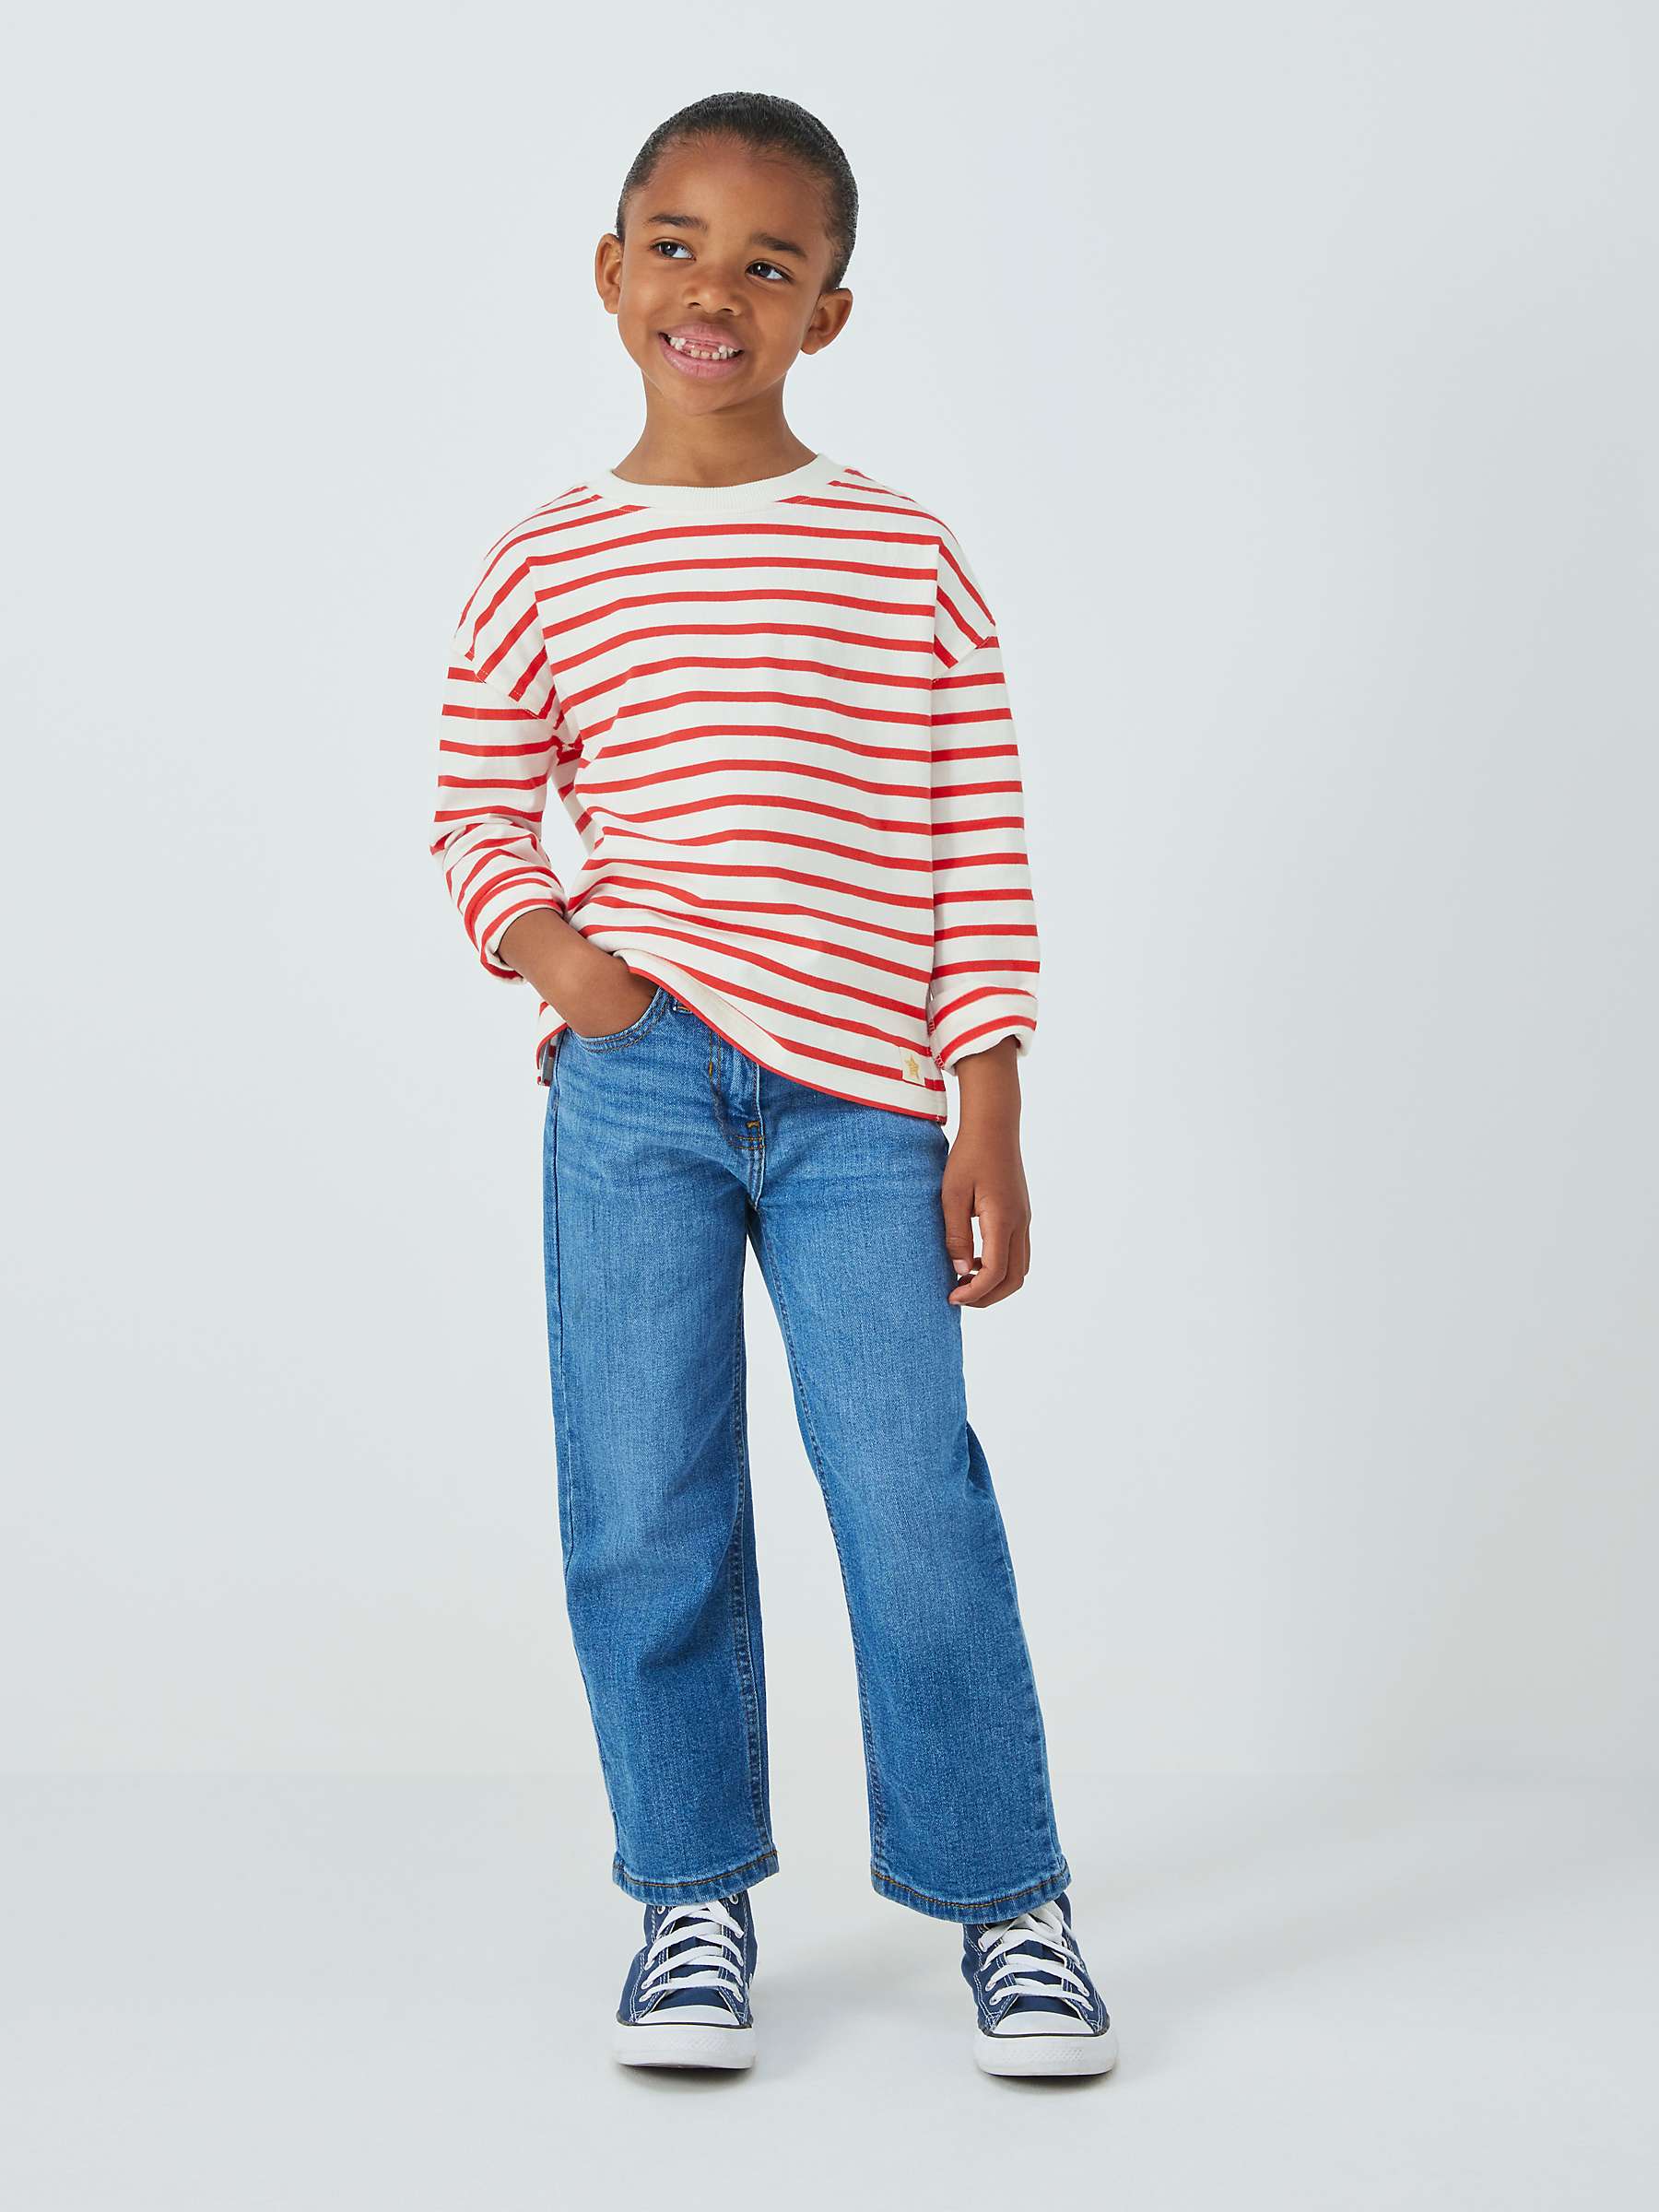 Buy John Lewis Kids' Breton Stripe Jersey Top Online at johnlewis.com